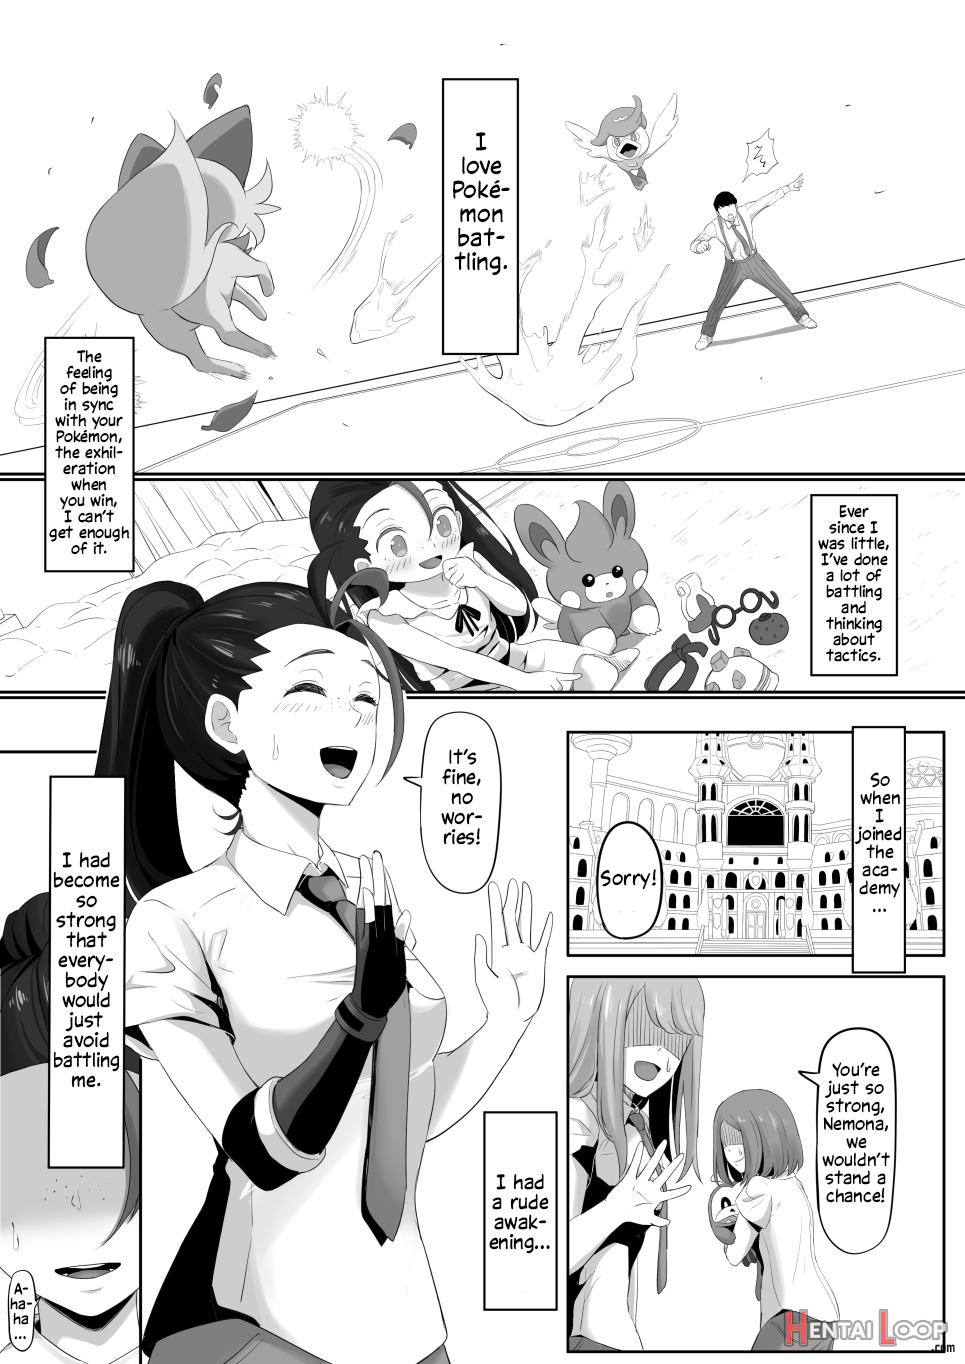 Pokémon Nemo No Ero Manga page 2